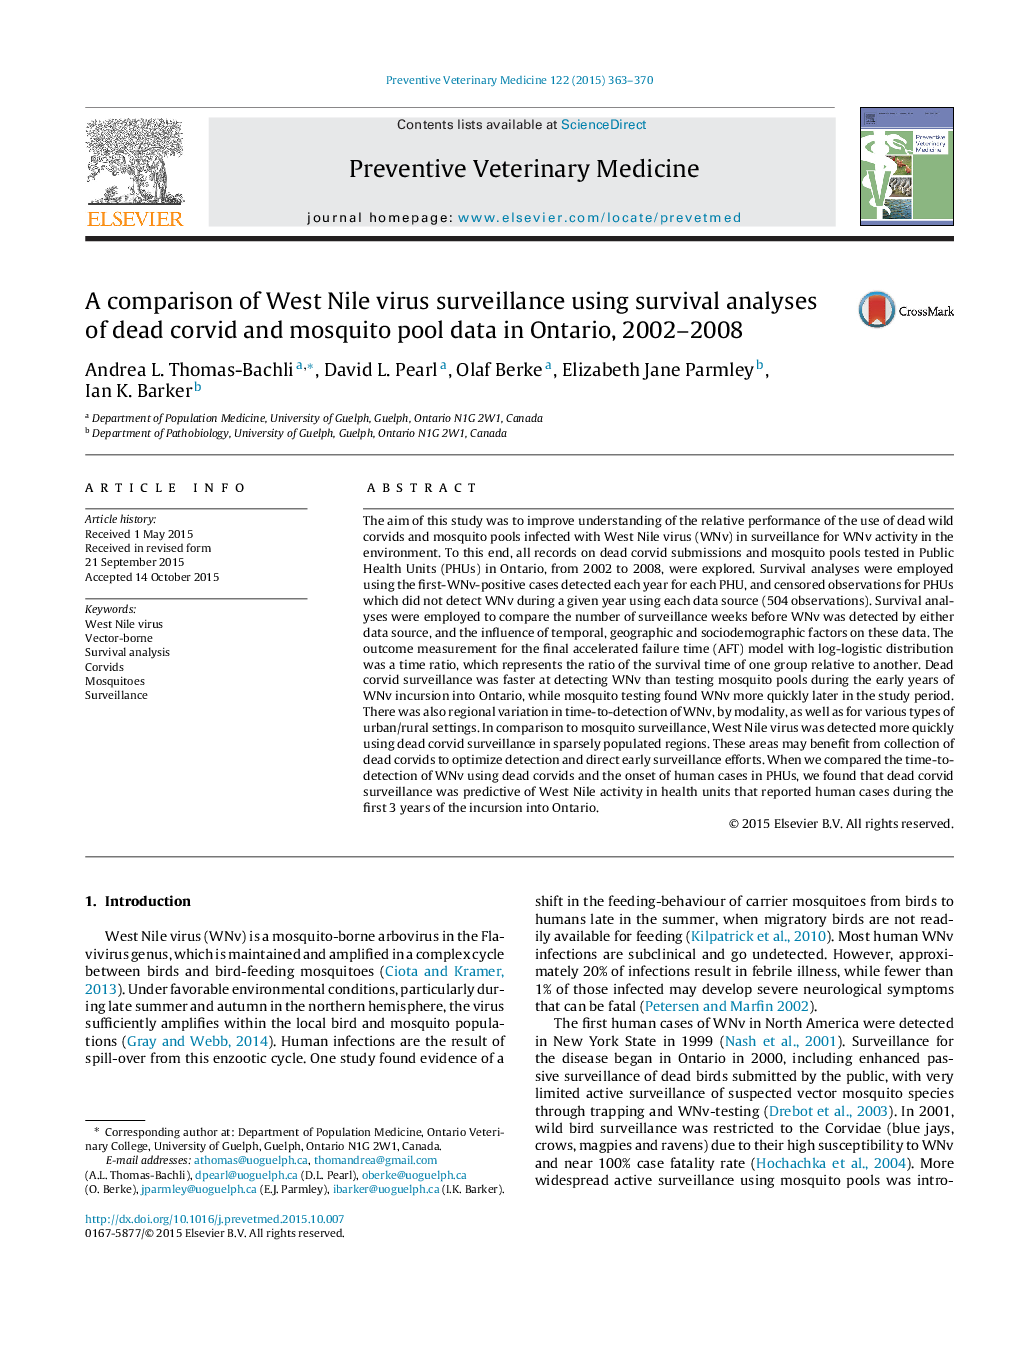 مقایسۀ نظارت بر ویروس غرب نیل با استفاده از تجزیه و تحلیل بقای داده های ماهوارهای مرغابی و پشه پنهانی در انتاریو، 2002-2008 